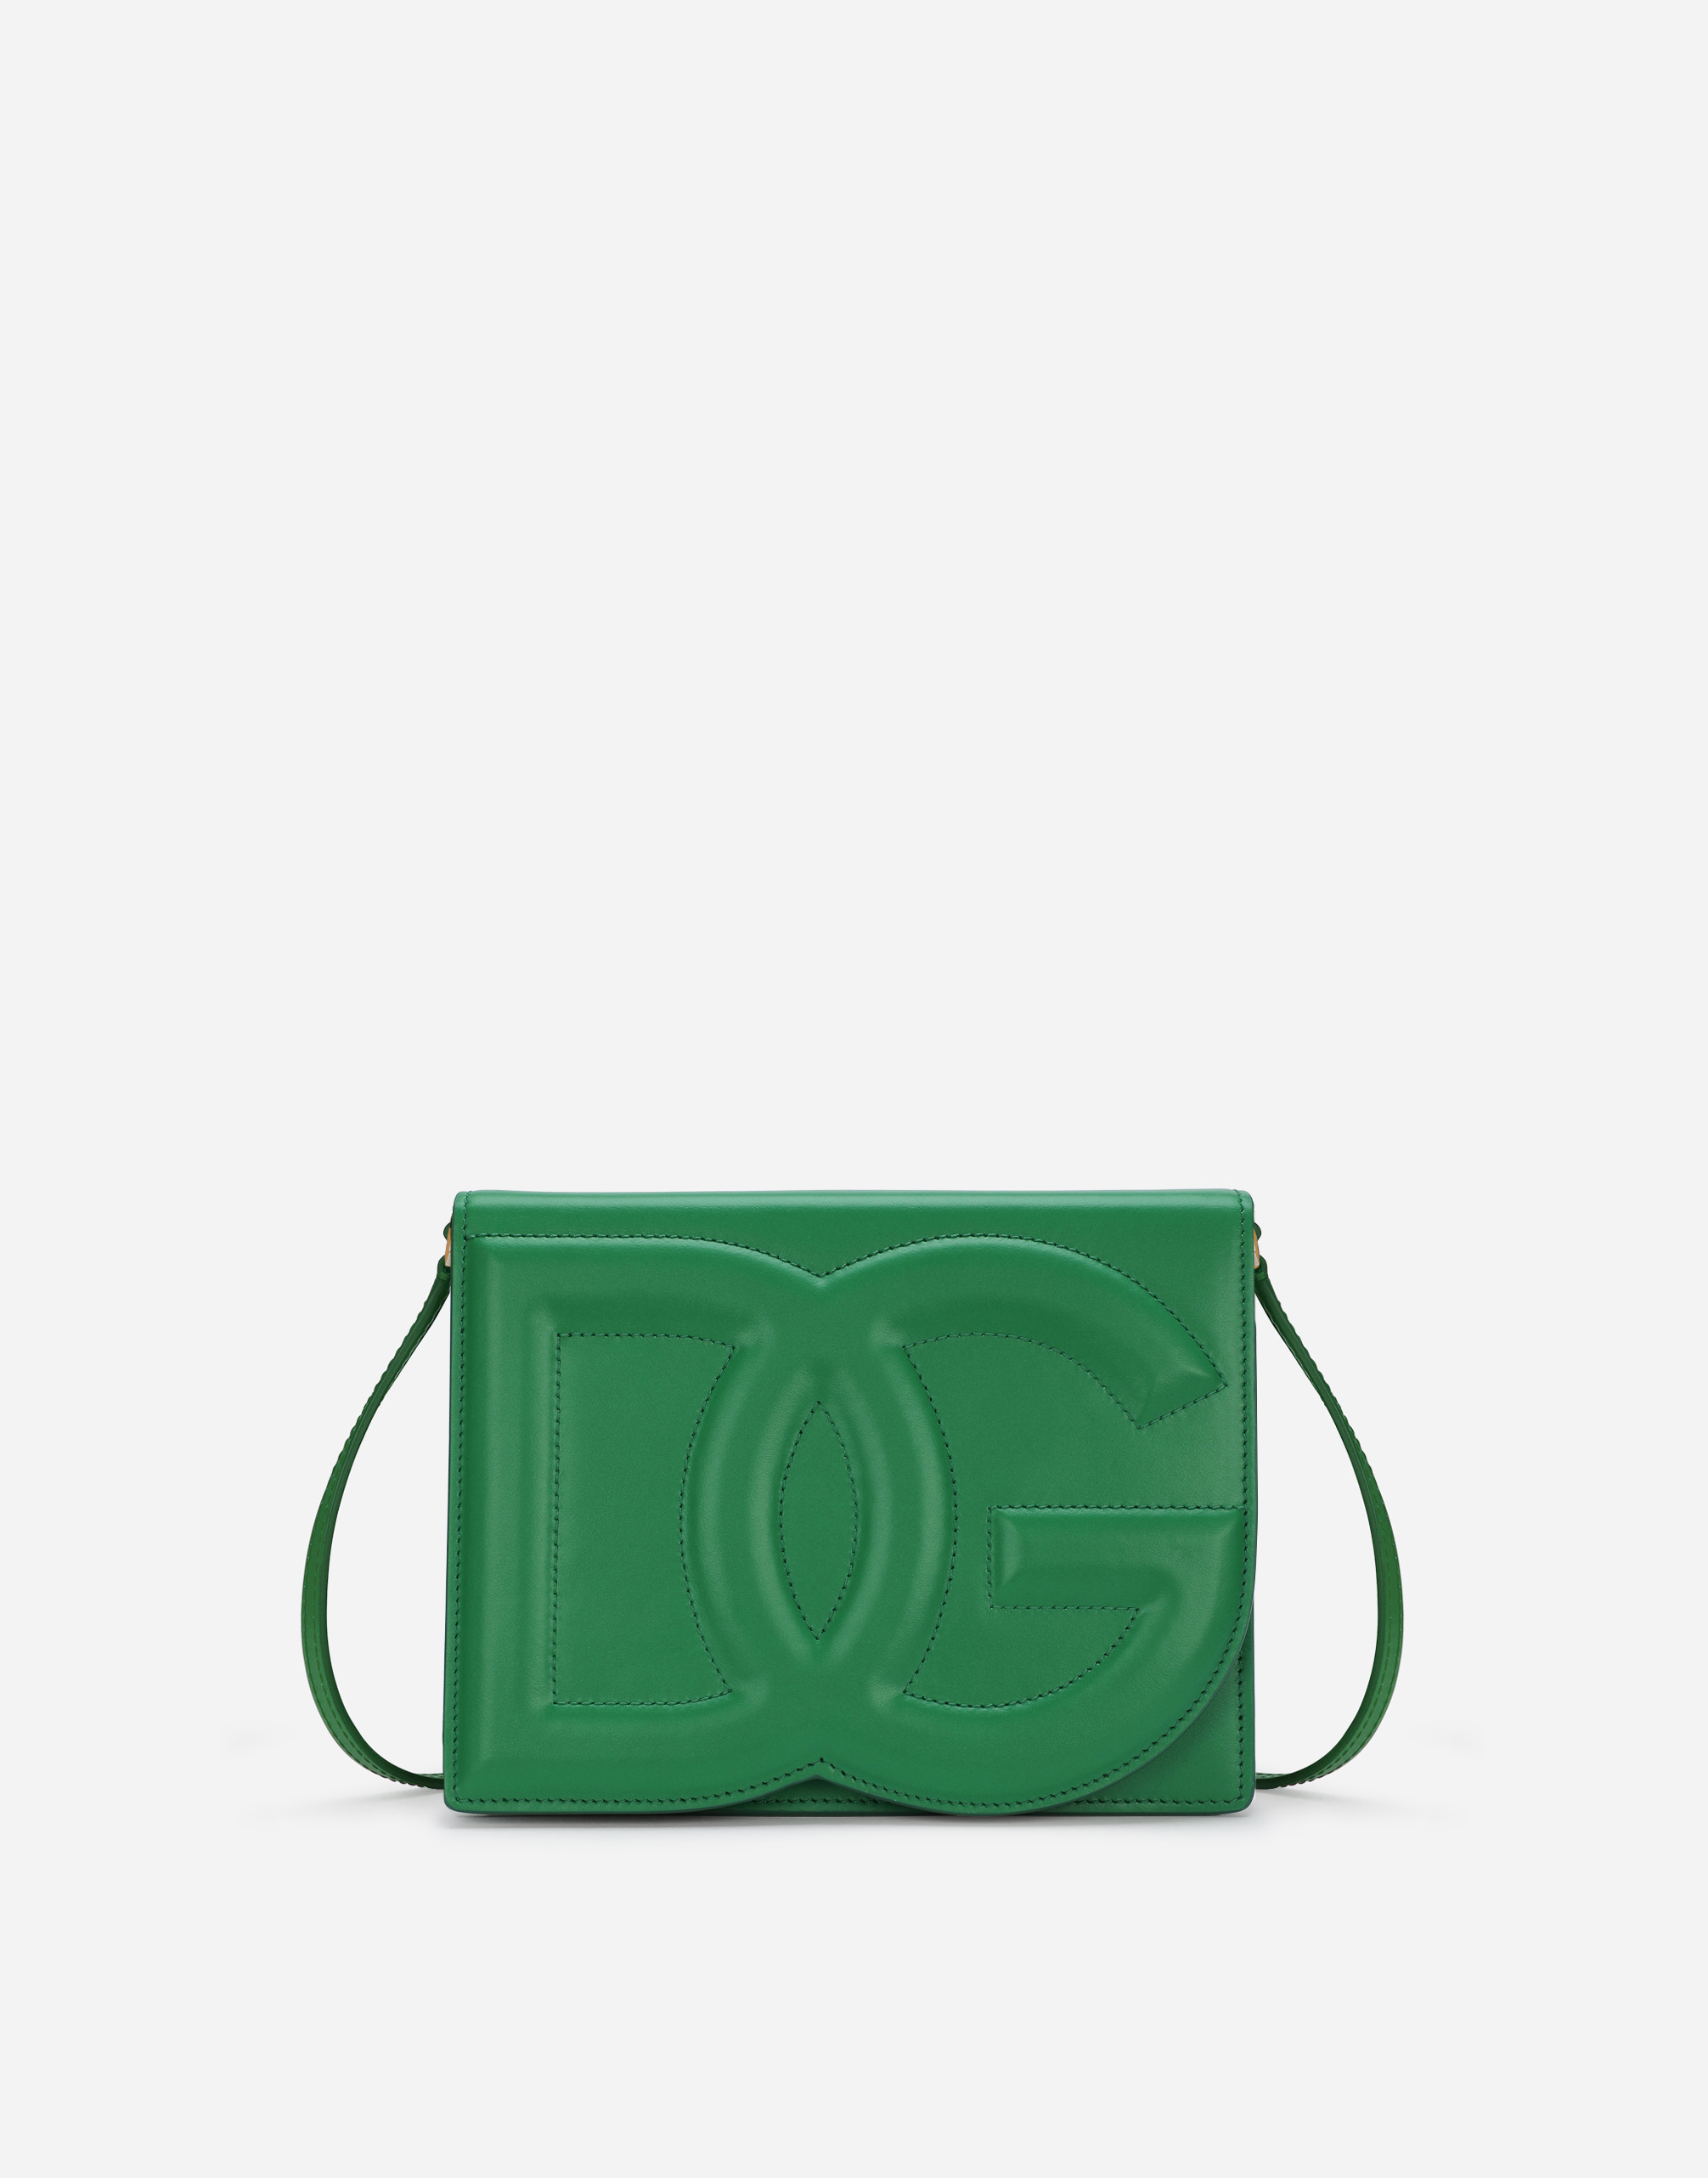 Calfskin DG logo crossbody bag in Green for Women 